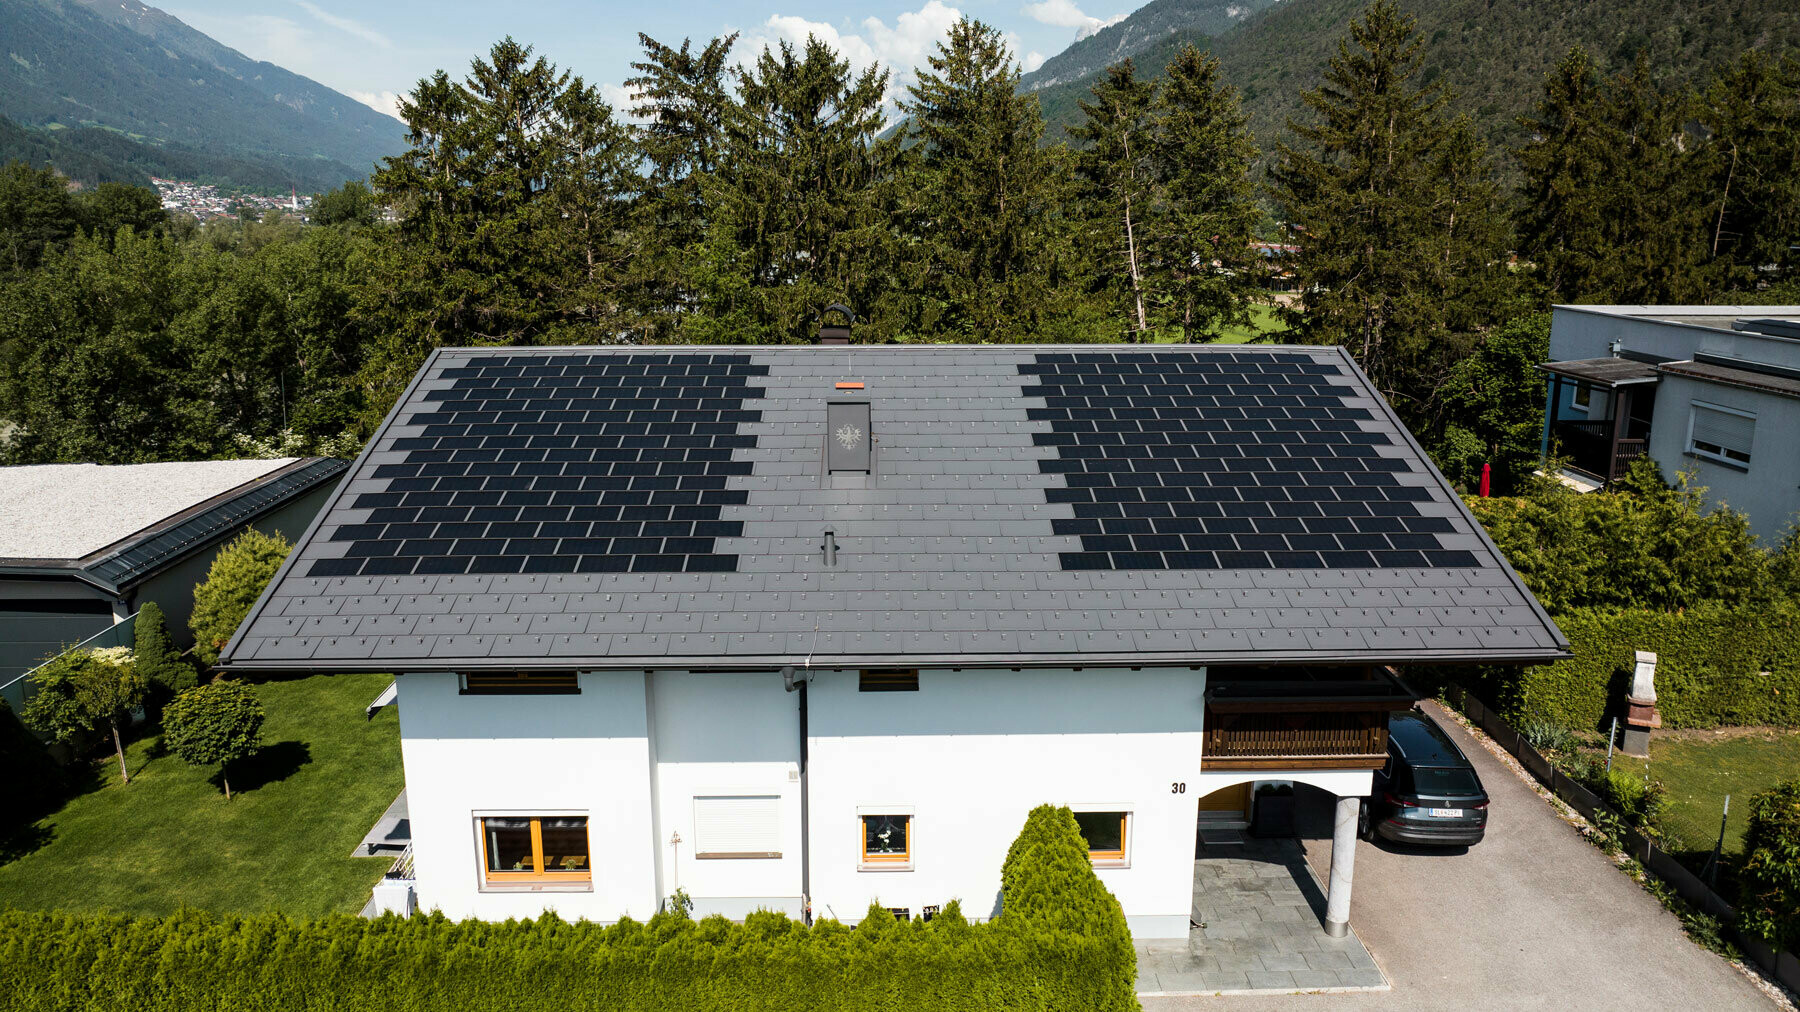 Prikazana je enodružinska hiša v podeželskem okolju, pokrita z malo solarno strešno ploščo PREFA s strešno ploščo R.16 v barvi P.10 temno siva.